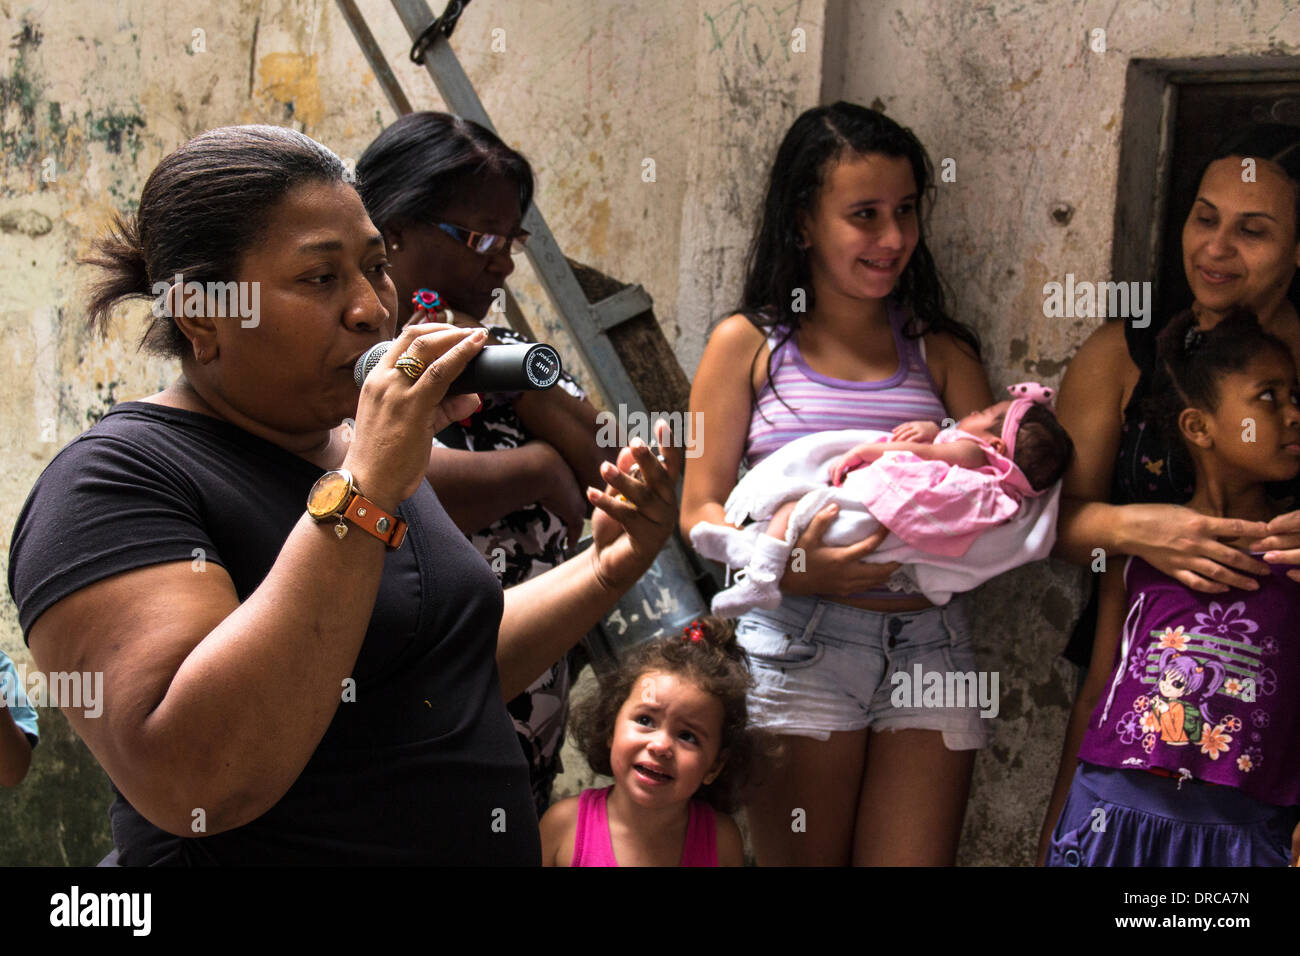 7 décembre 2013 - acte Social a rassemblé des militants, des journalistes et des représentants de mouvements sociaux de débattre contre la violence policière et la criminalisation des bidonvilles de Rio. En 2008, un Matheus de 8 ans qui a été tué par la CDP dans la favela de Maré, à Rio de Janeiro. Morts et disparitions de taudis continuent de se produire en raison de l'action de la police.     Gracilene Rodrigues, Matheus mère Banque D'Images